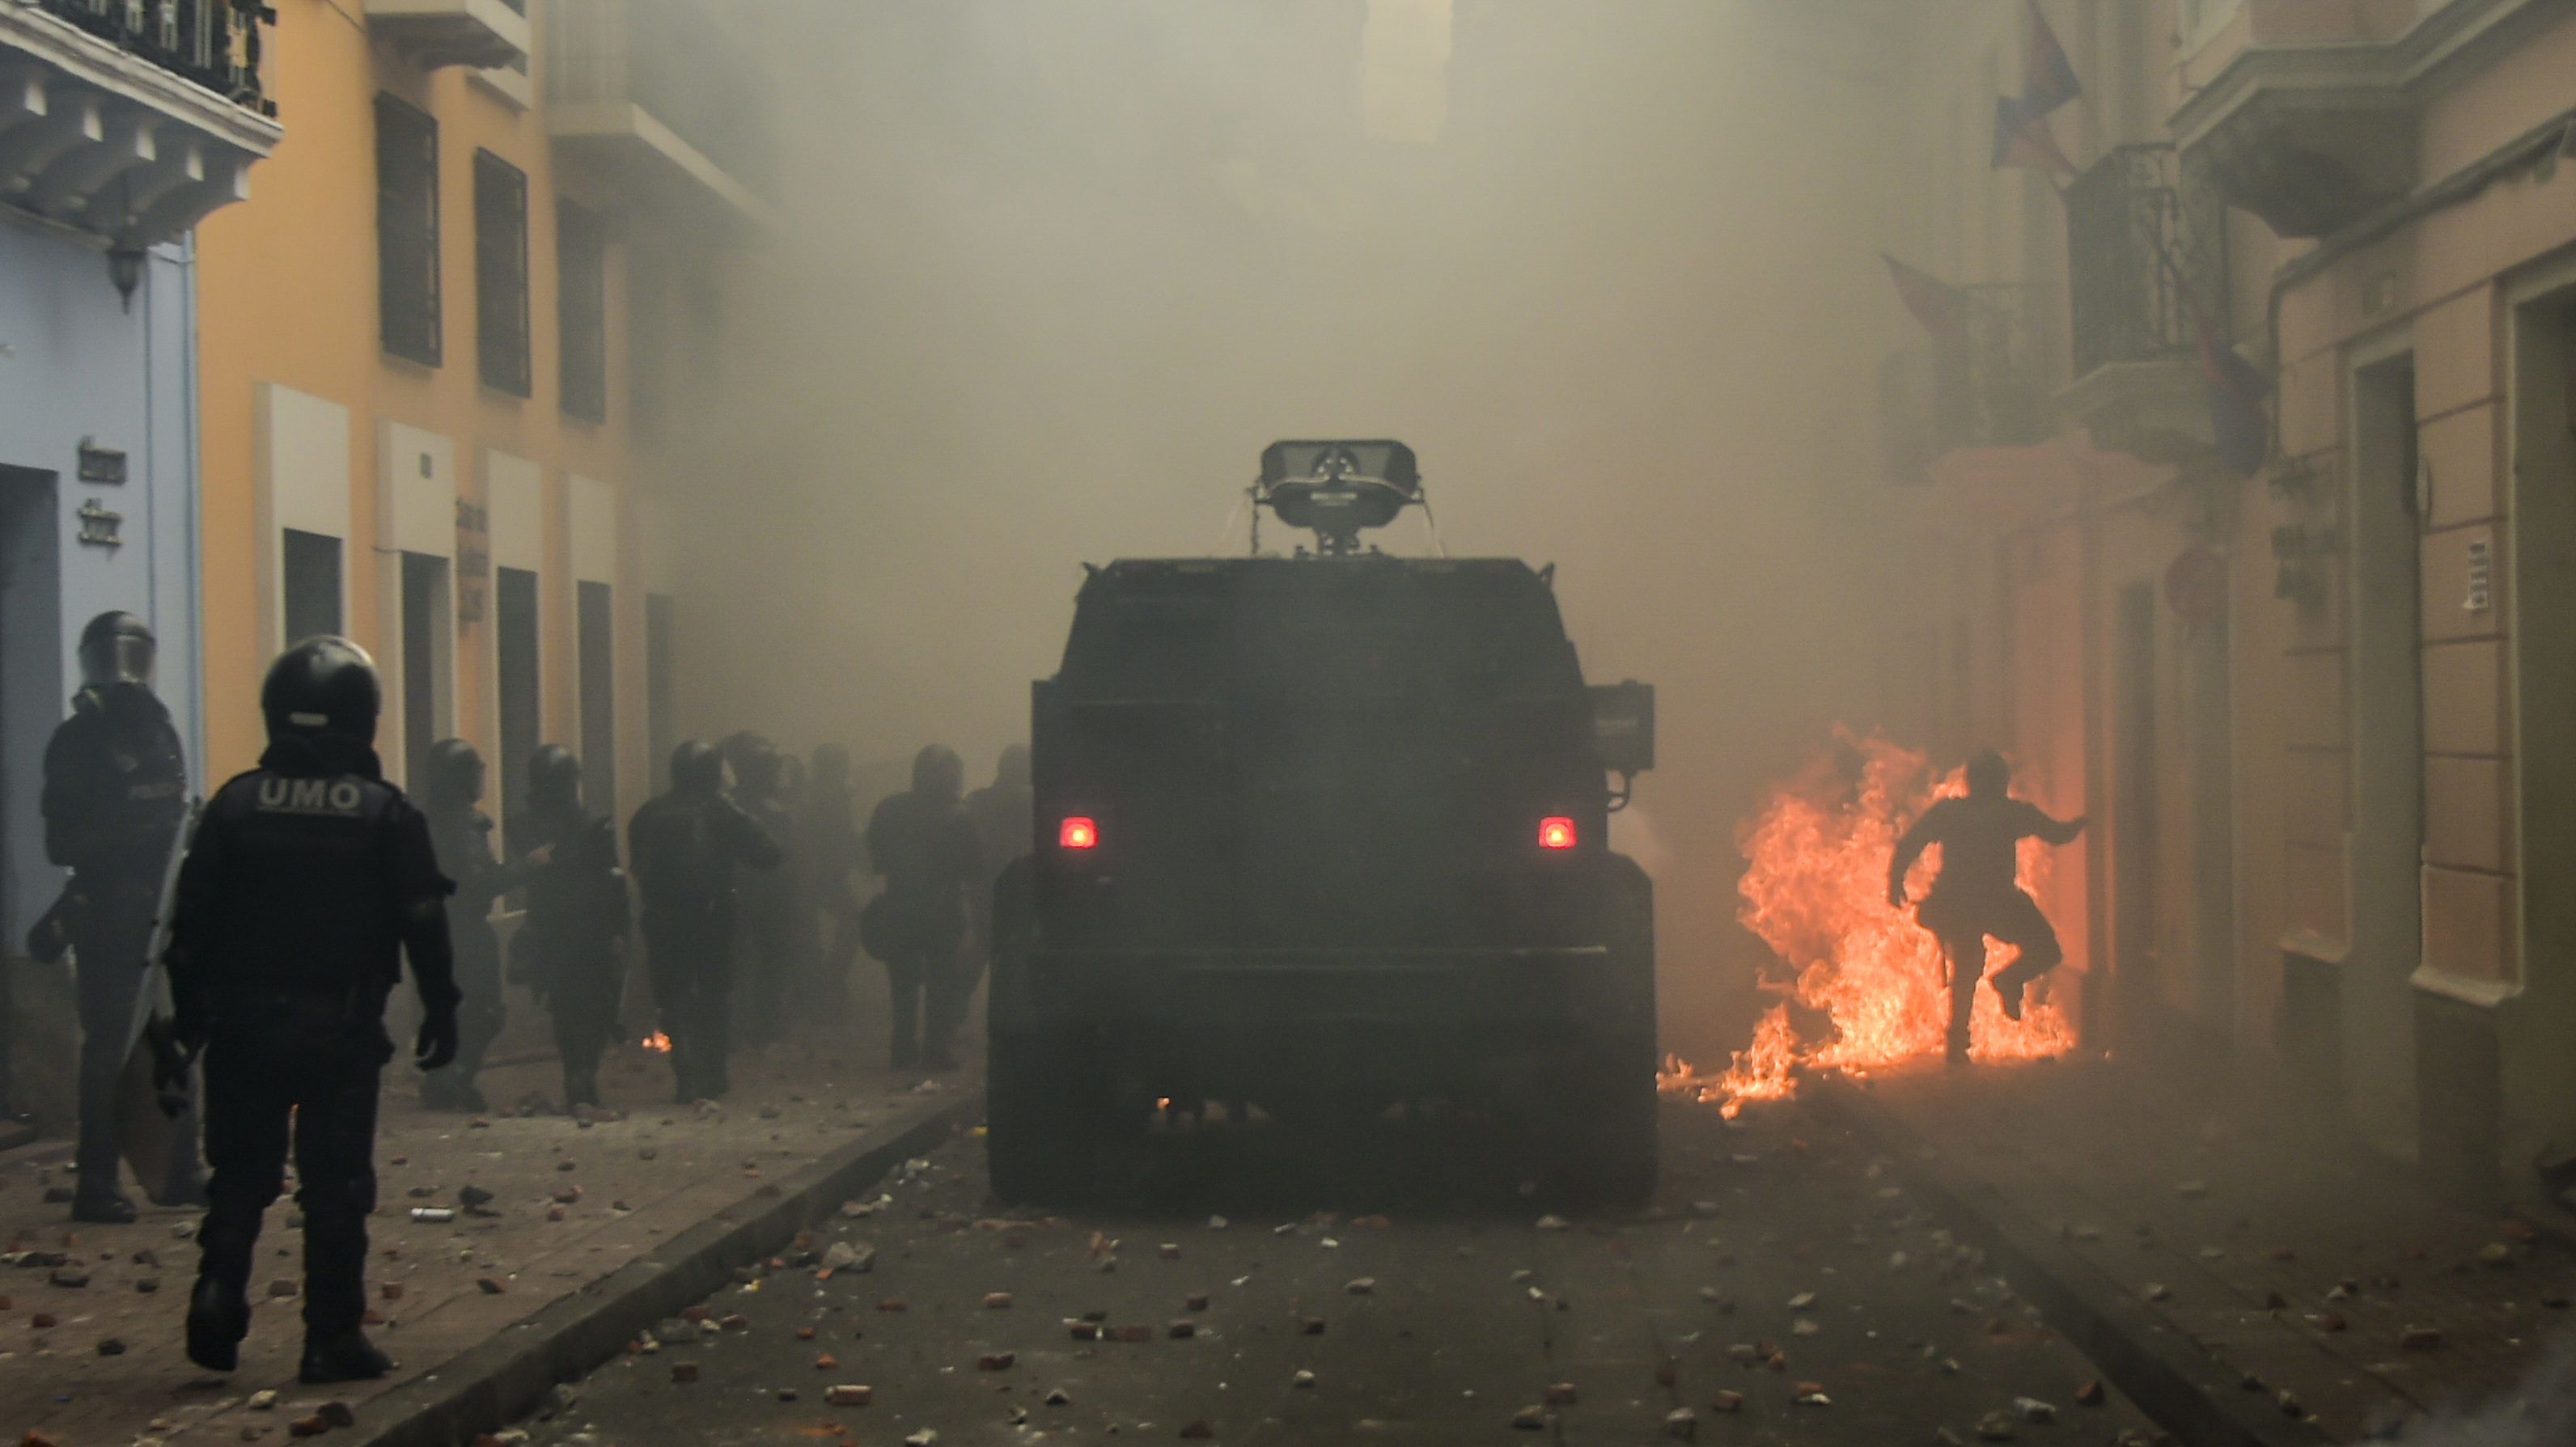 Előkerültek az aknavetők is az ecuadori tüntetésen